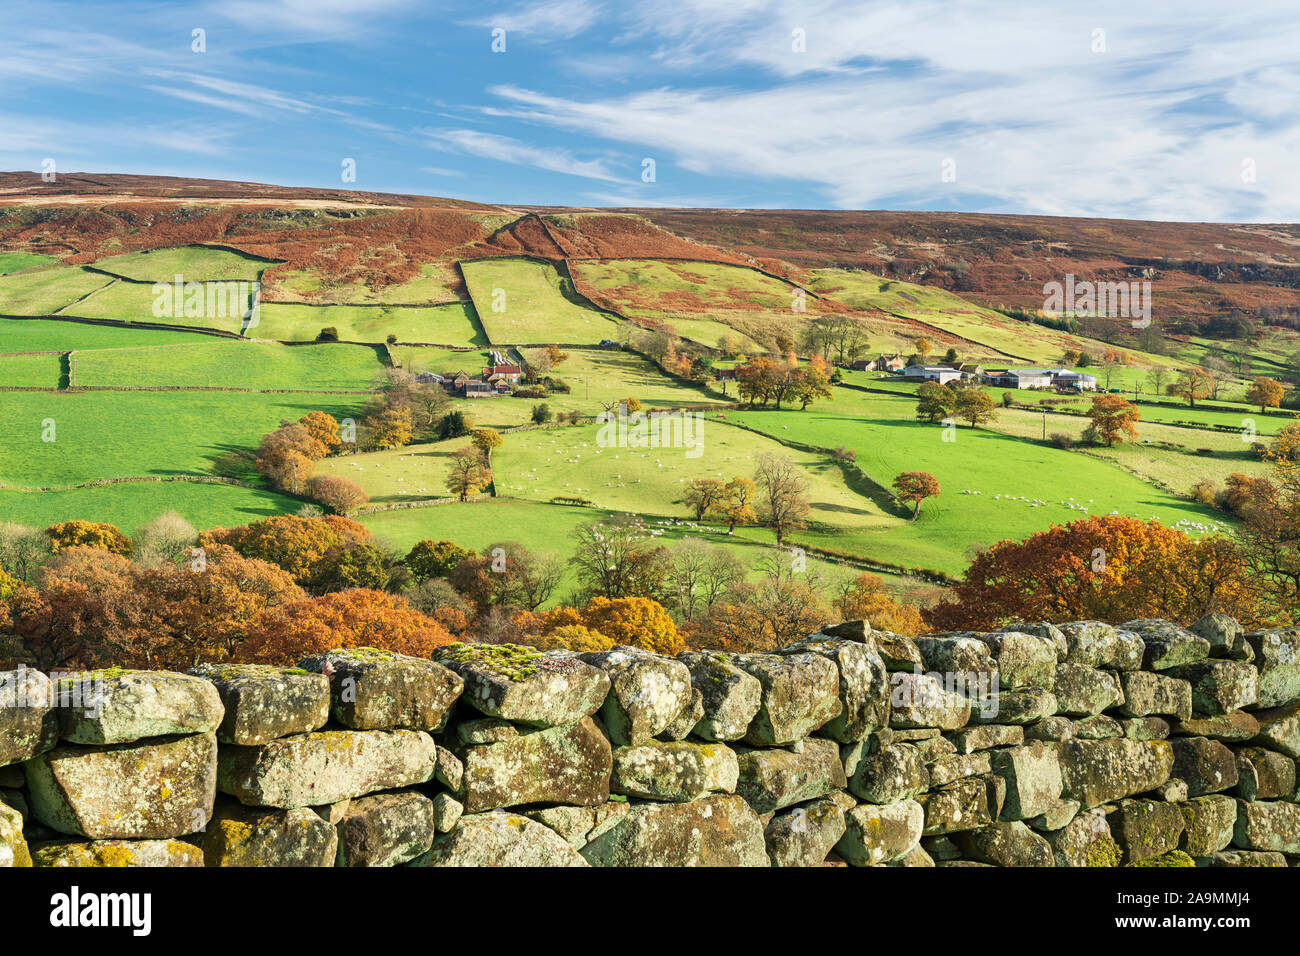 Campi verdi, muri in pietra a secco e foglie di autunno in tutta Farndale in North Yorkshire, Regno Unito. Foto Stock